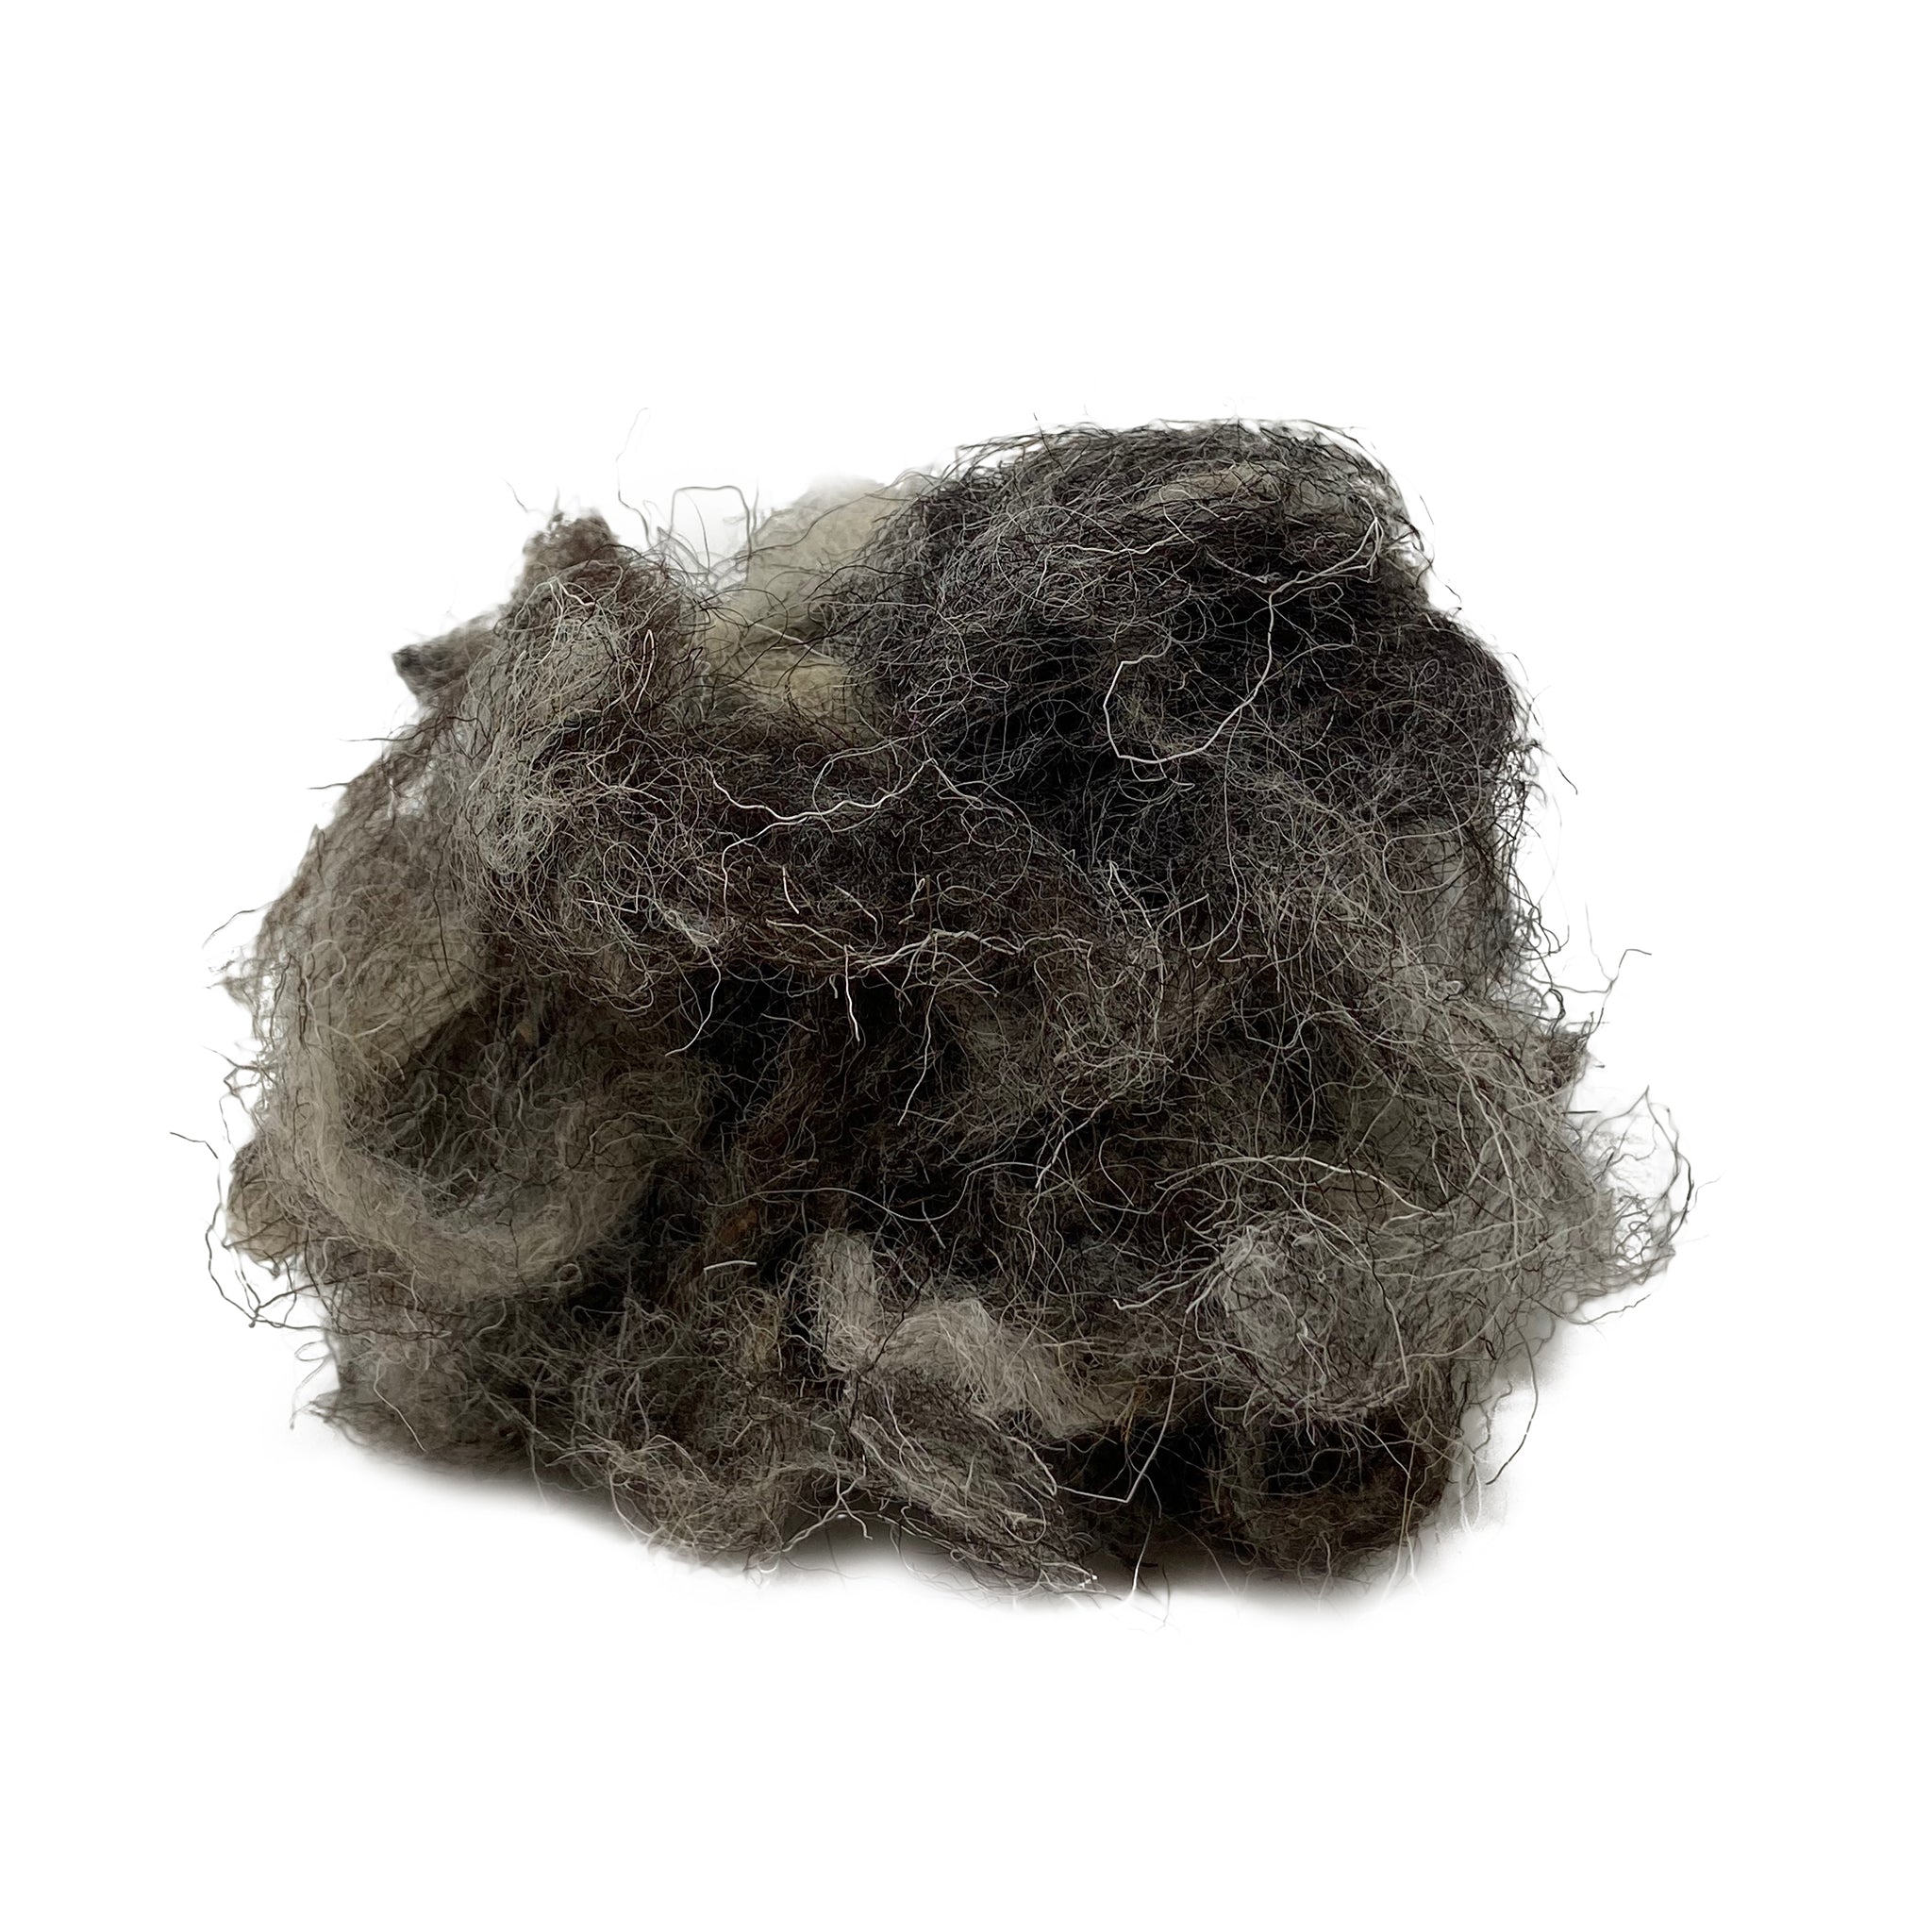 Nesting wool